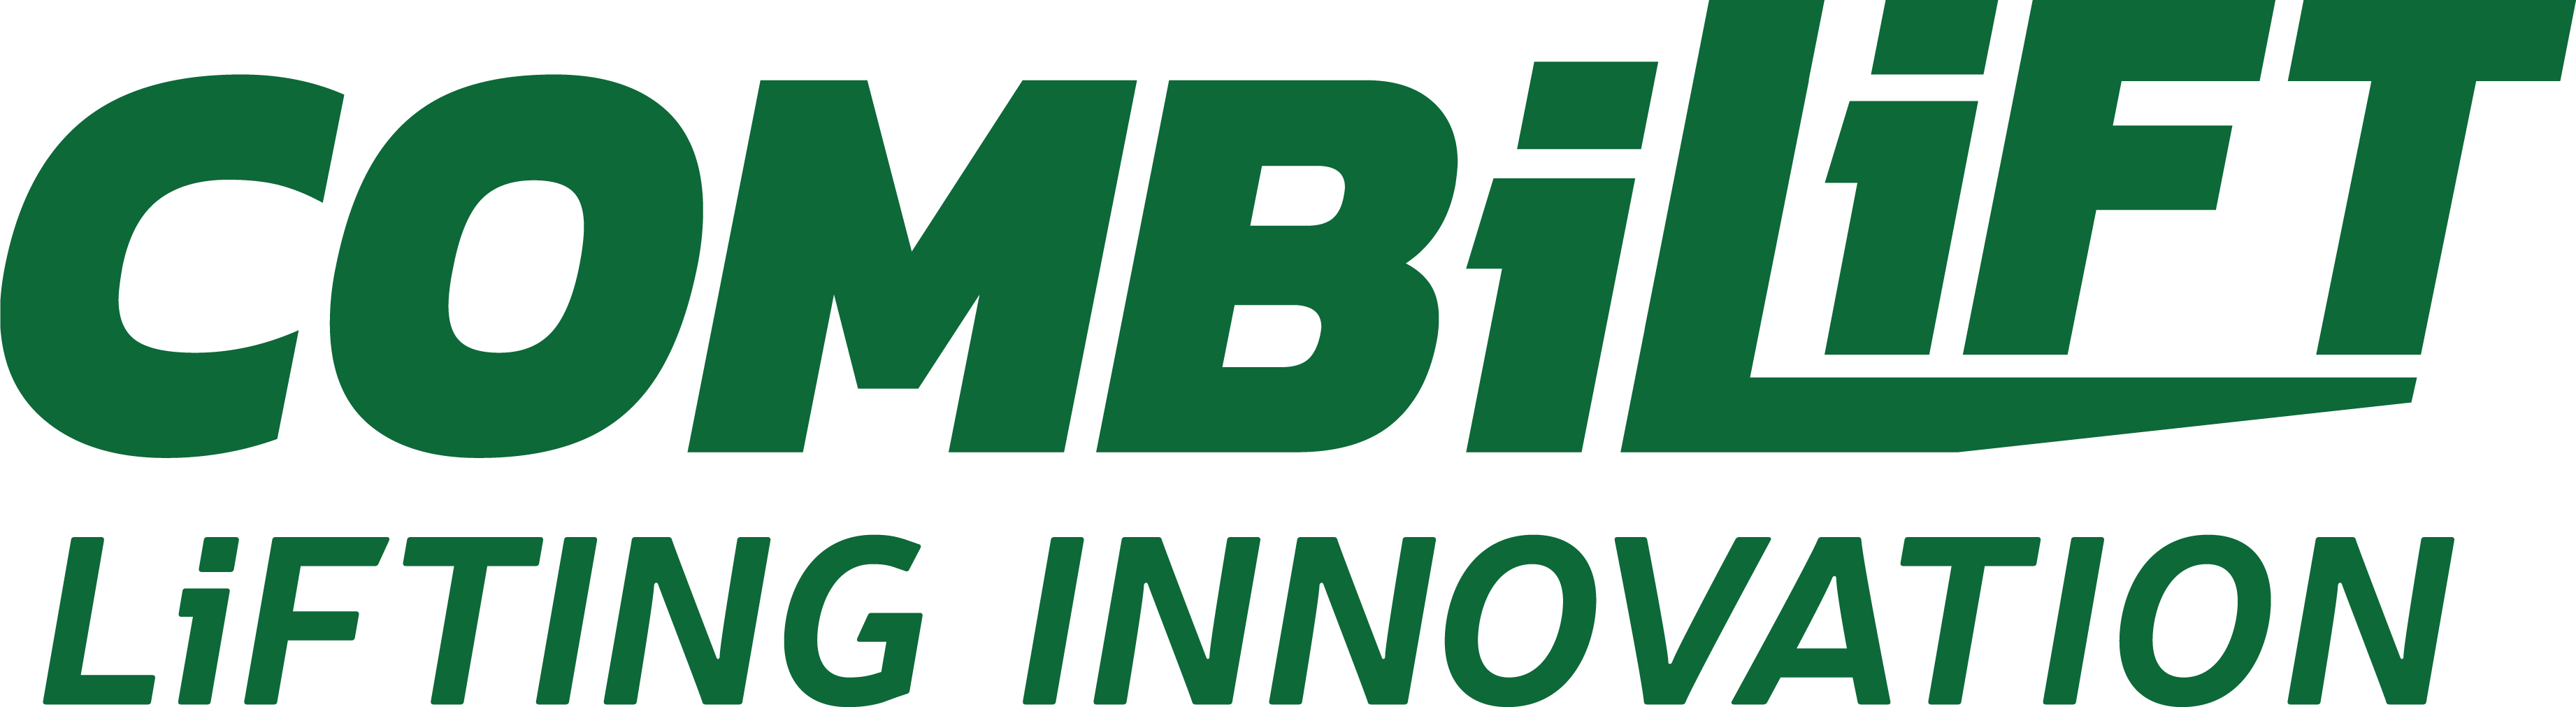 Combilift green logo pantone 349c